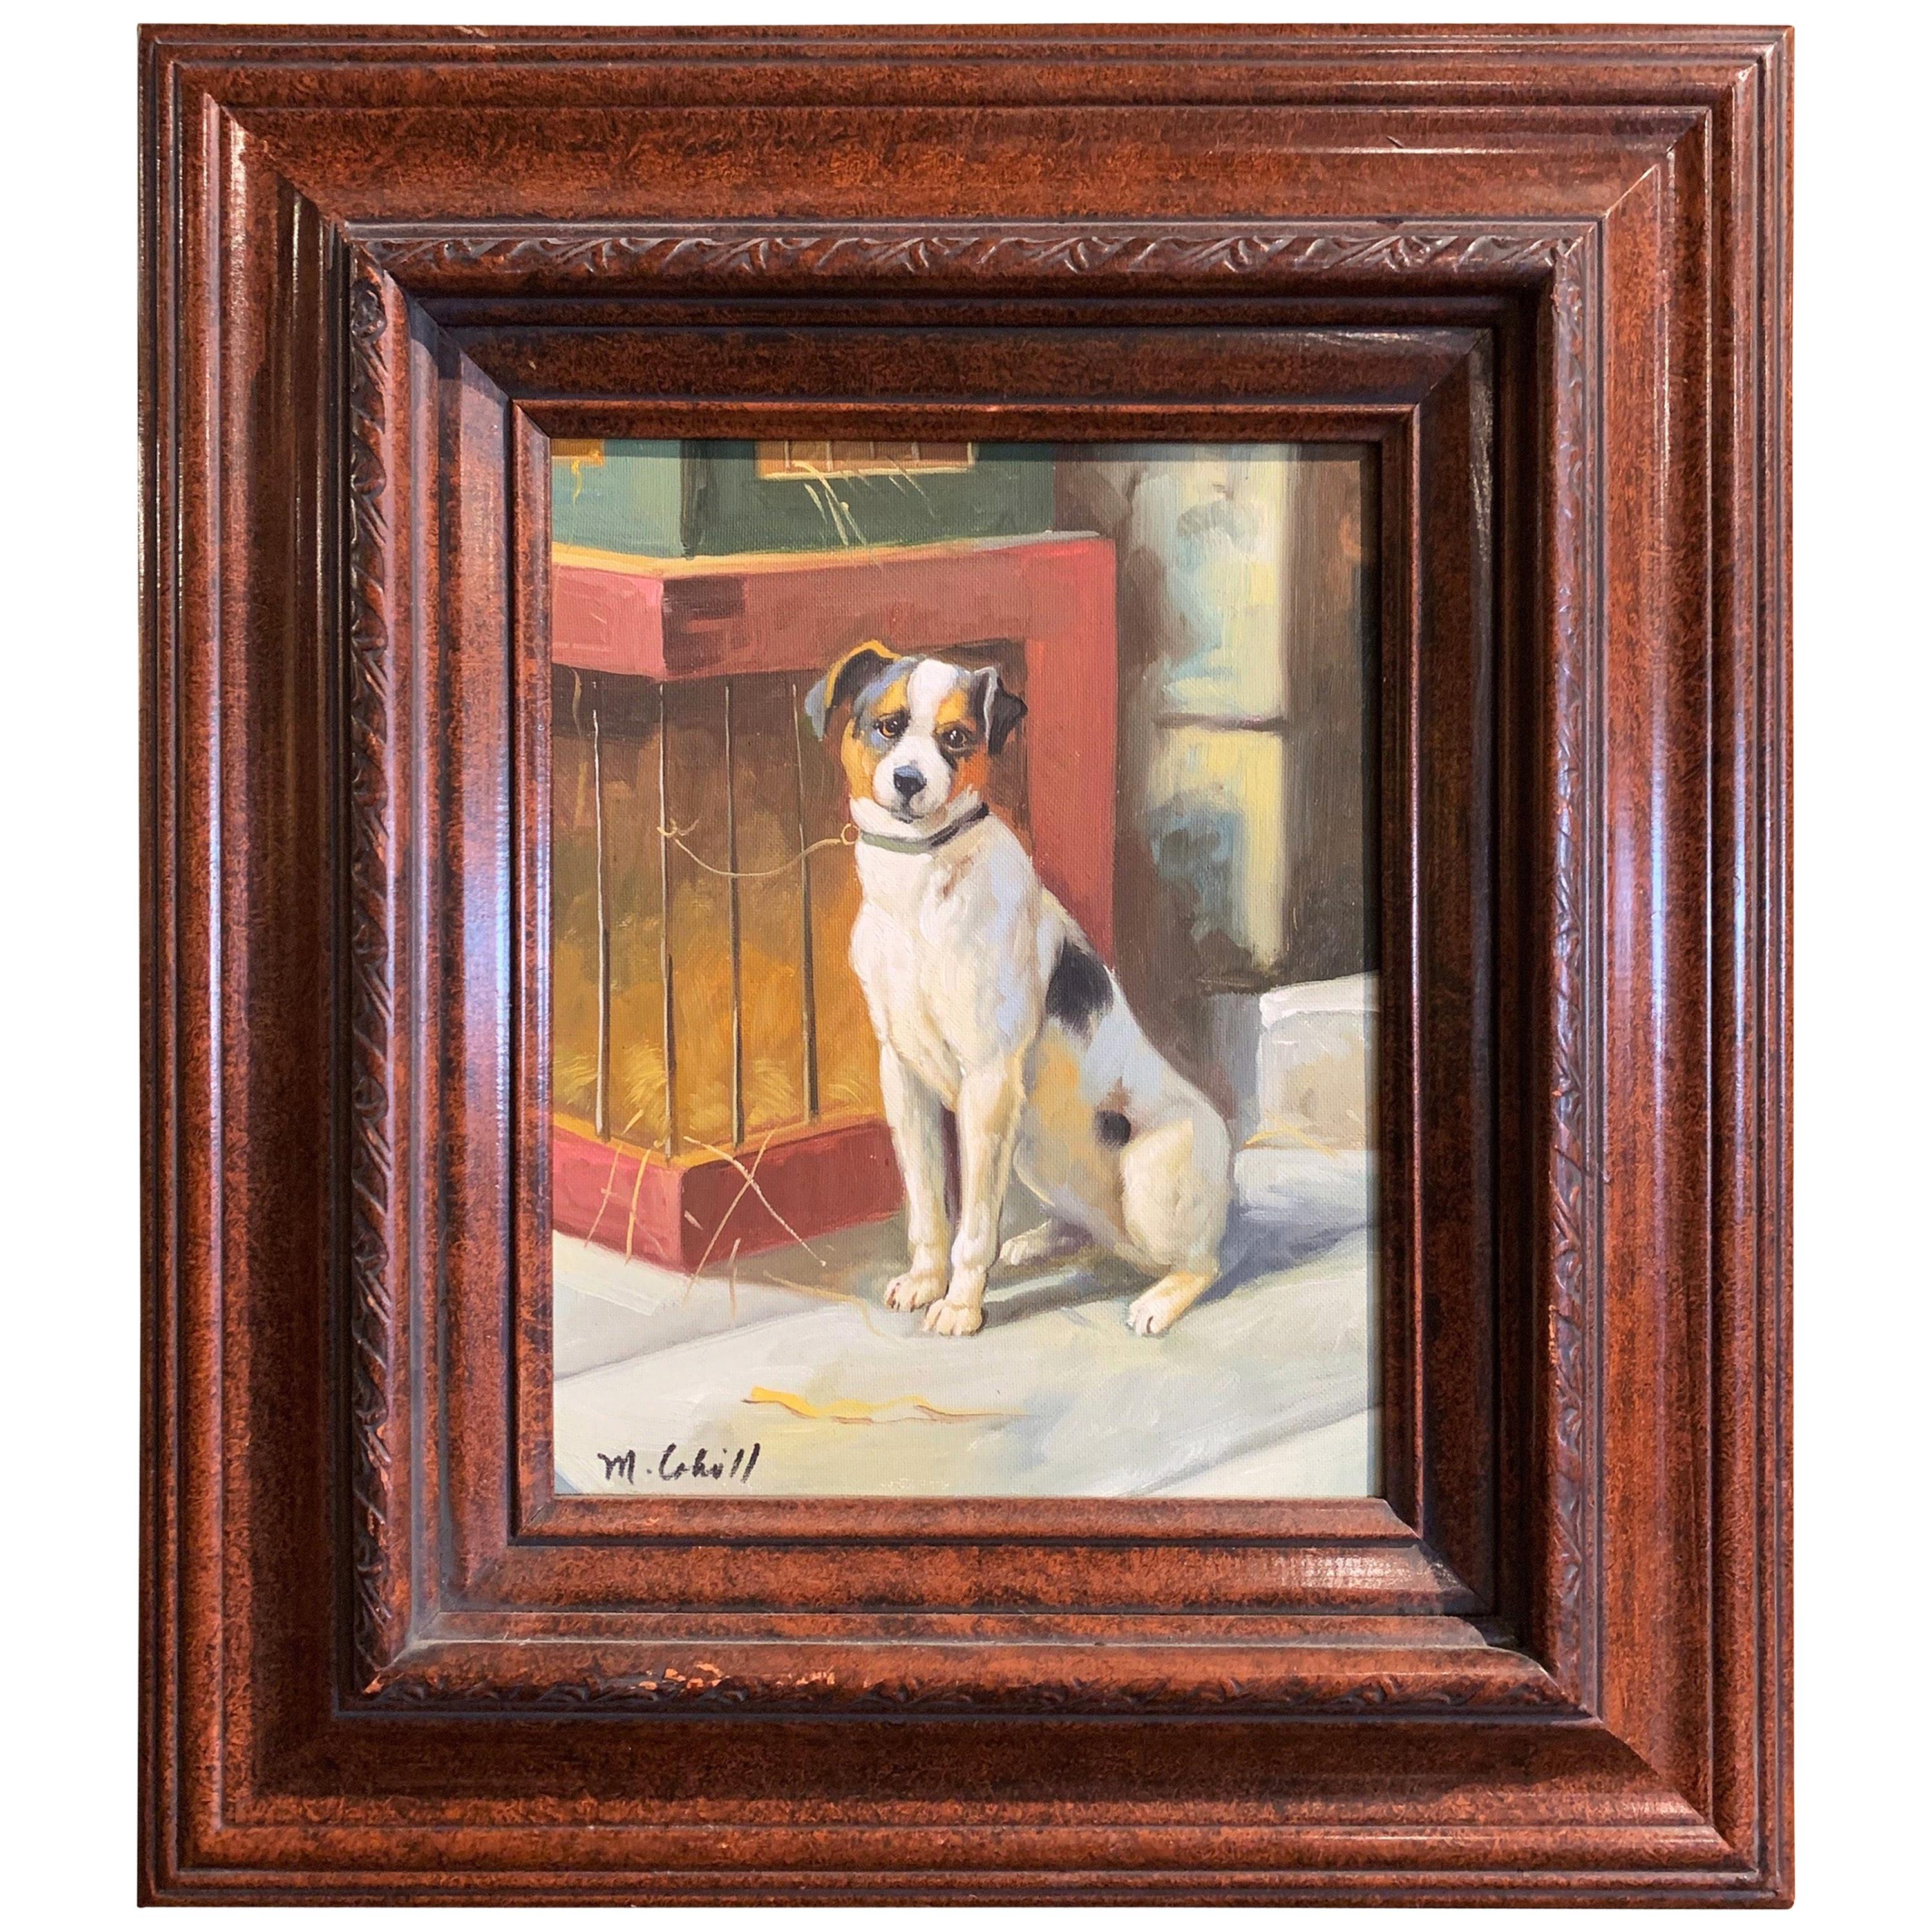 Öl auf Leinwand Terrier Gemälde in geschnitztem Rahmen Signiert M. Cahill